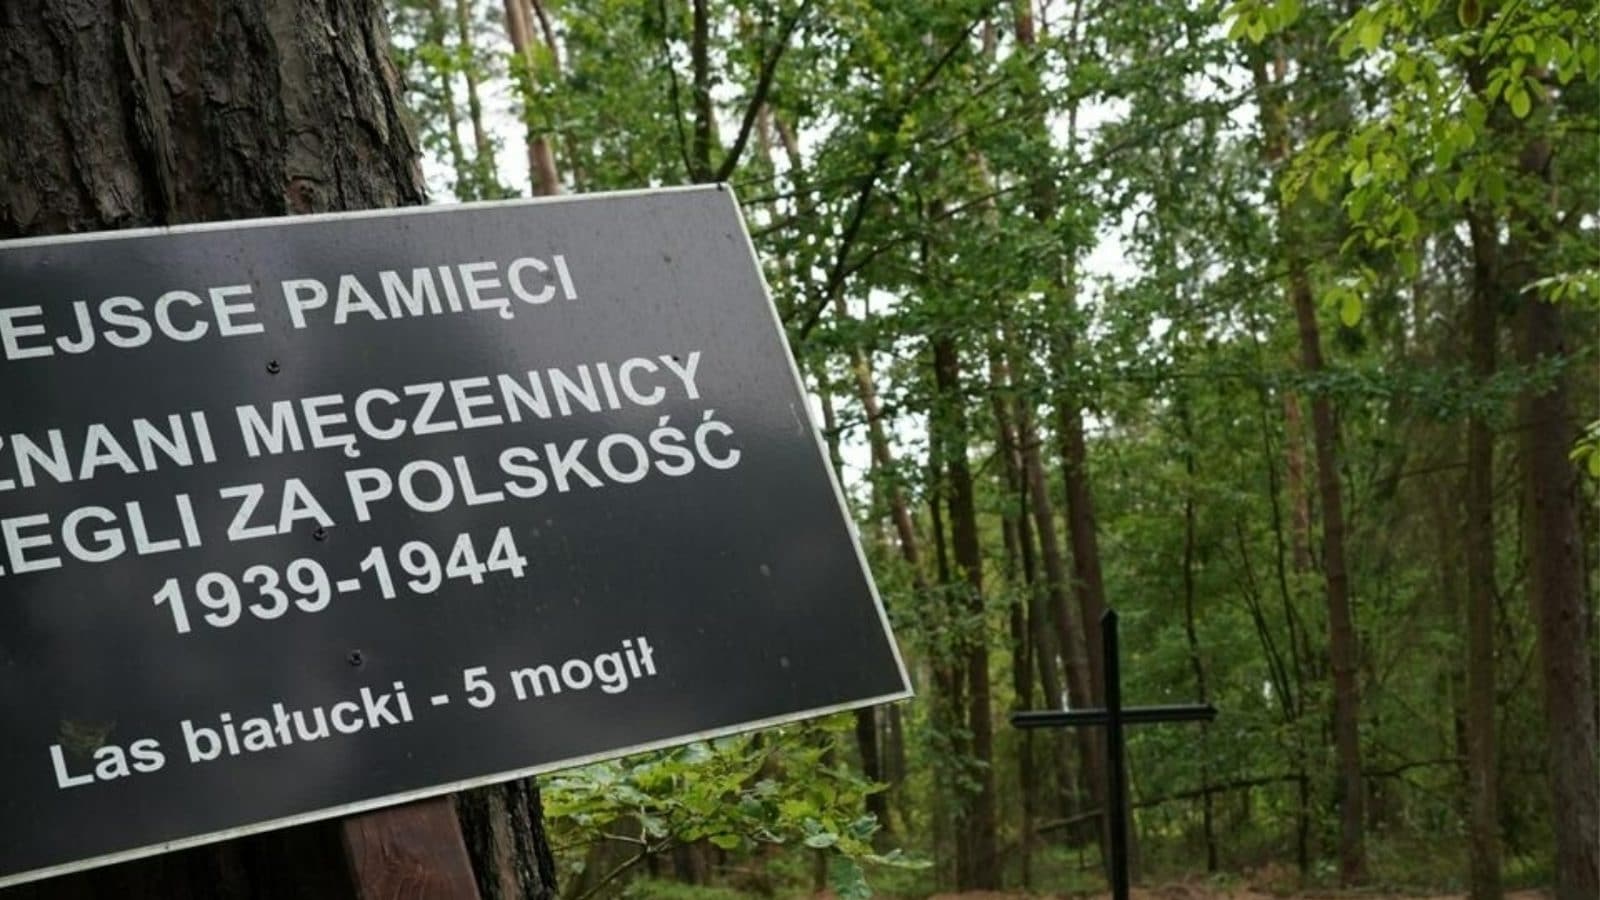 Szczątki 8000 ofiar nazistowskich wojen odnalezione w Polsce